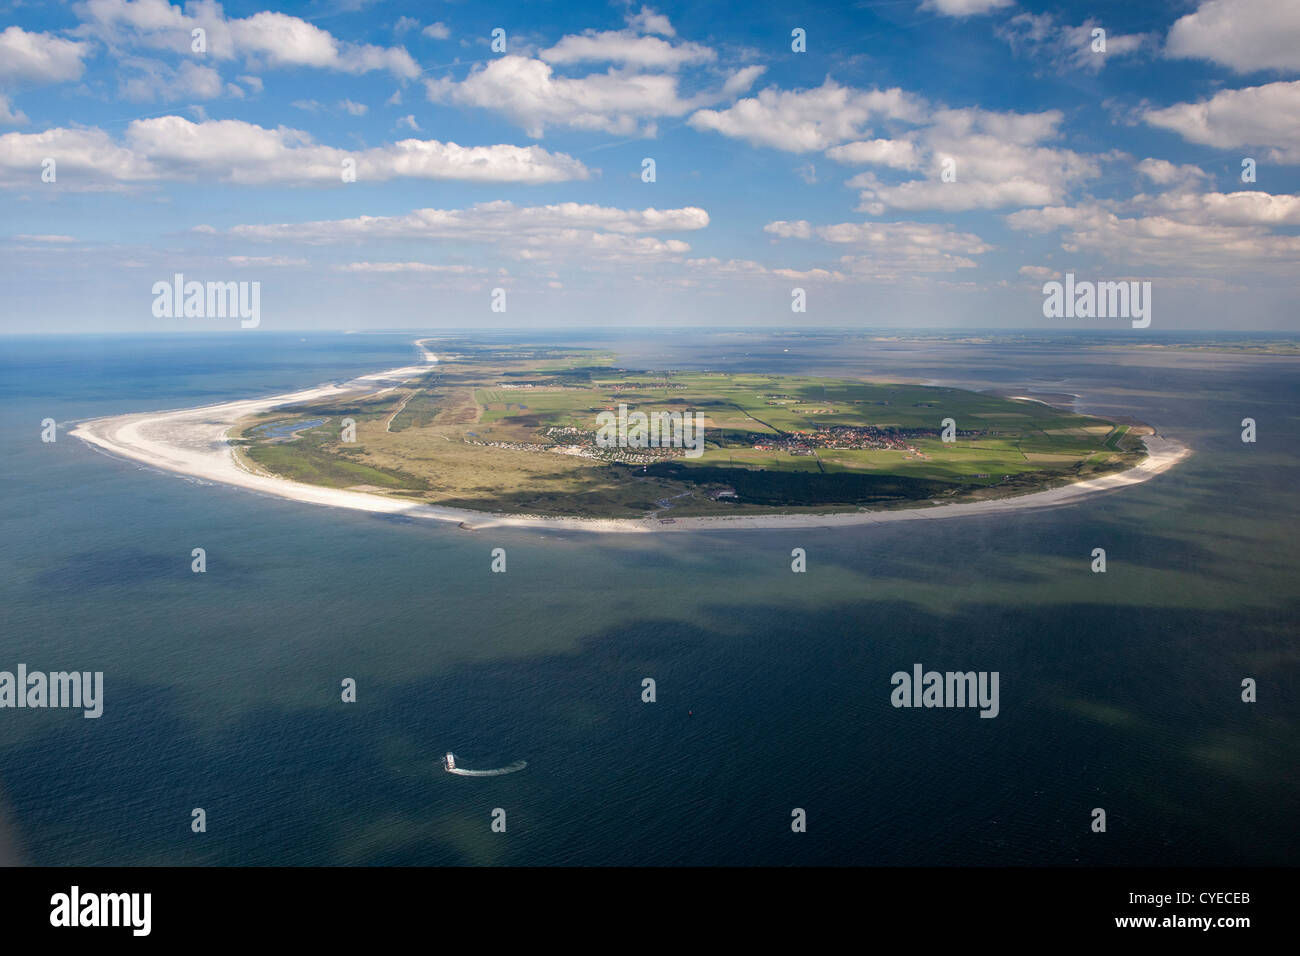 Les Pays-Bas, l'île d'Ameland, appartenant aux îles de la mer des Wadden. UNESCO World Heritage Site. Vue aérienne. Banque D'Images